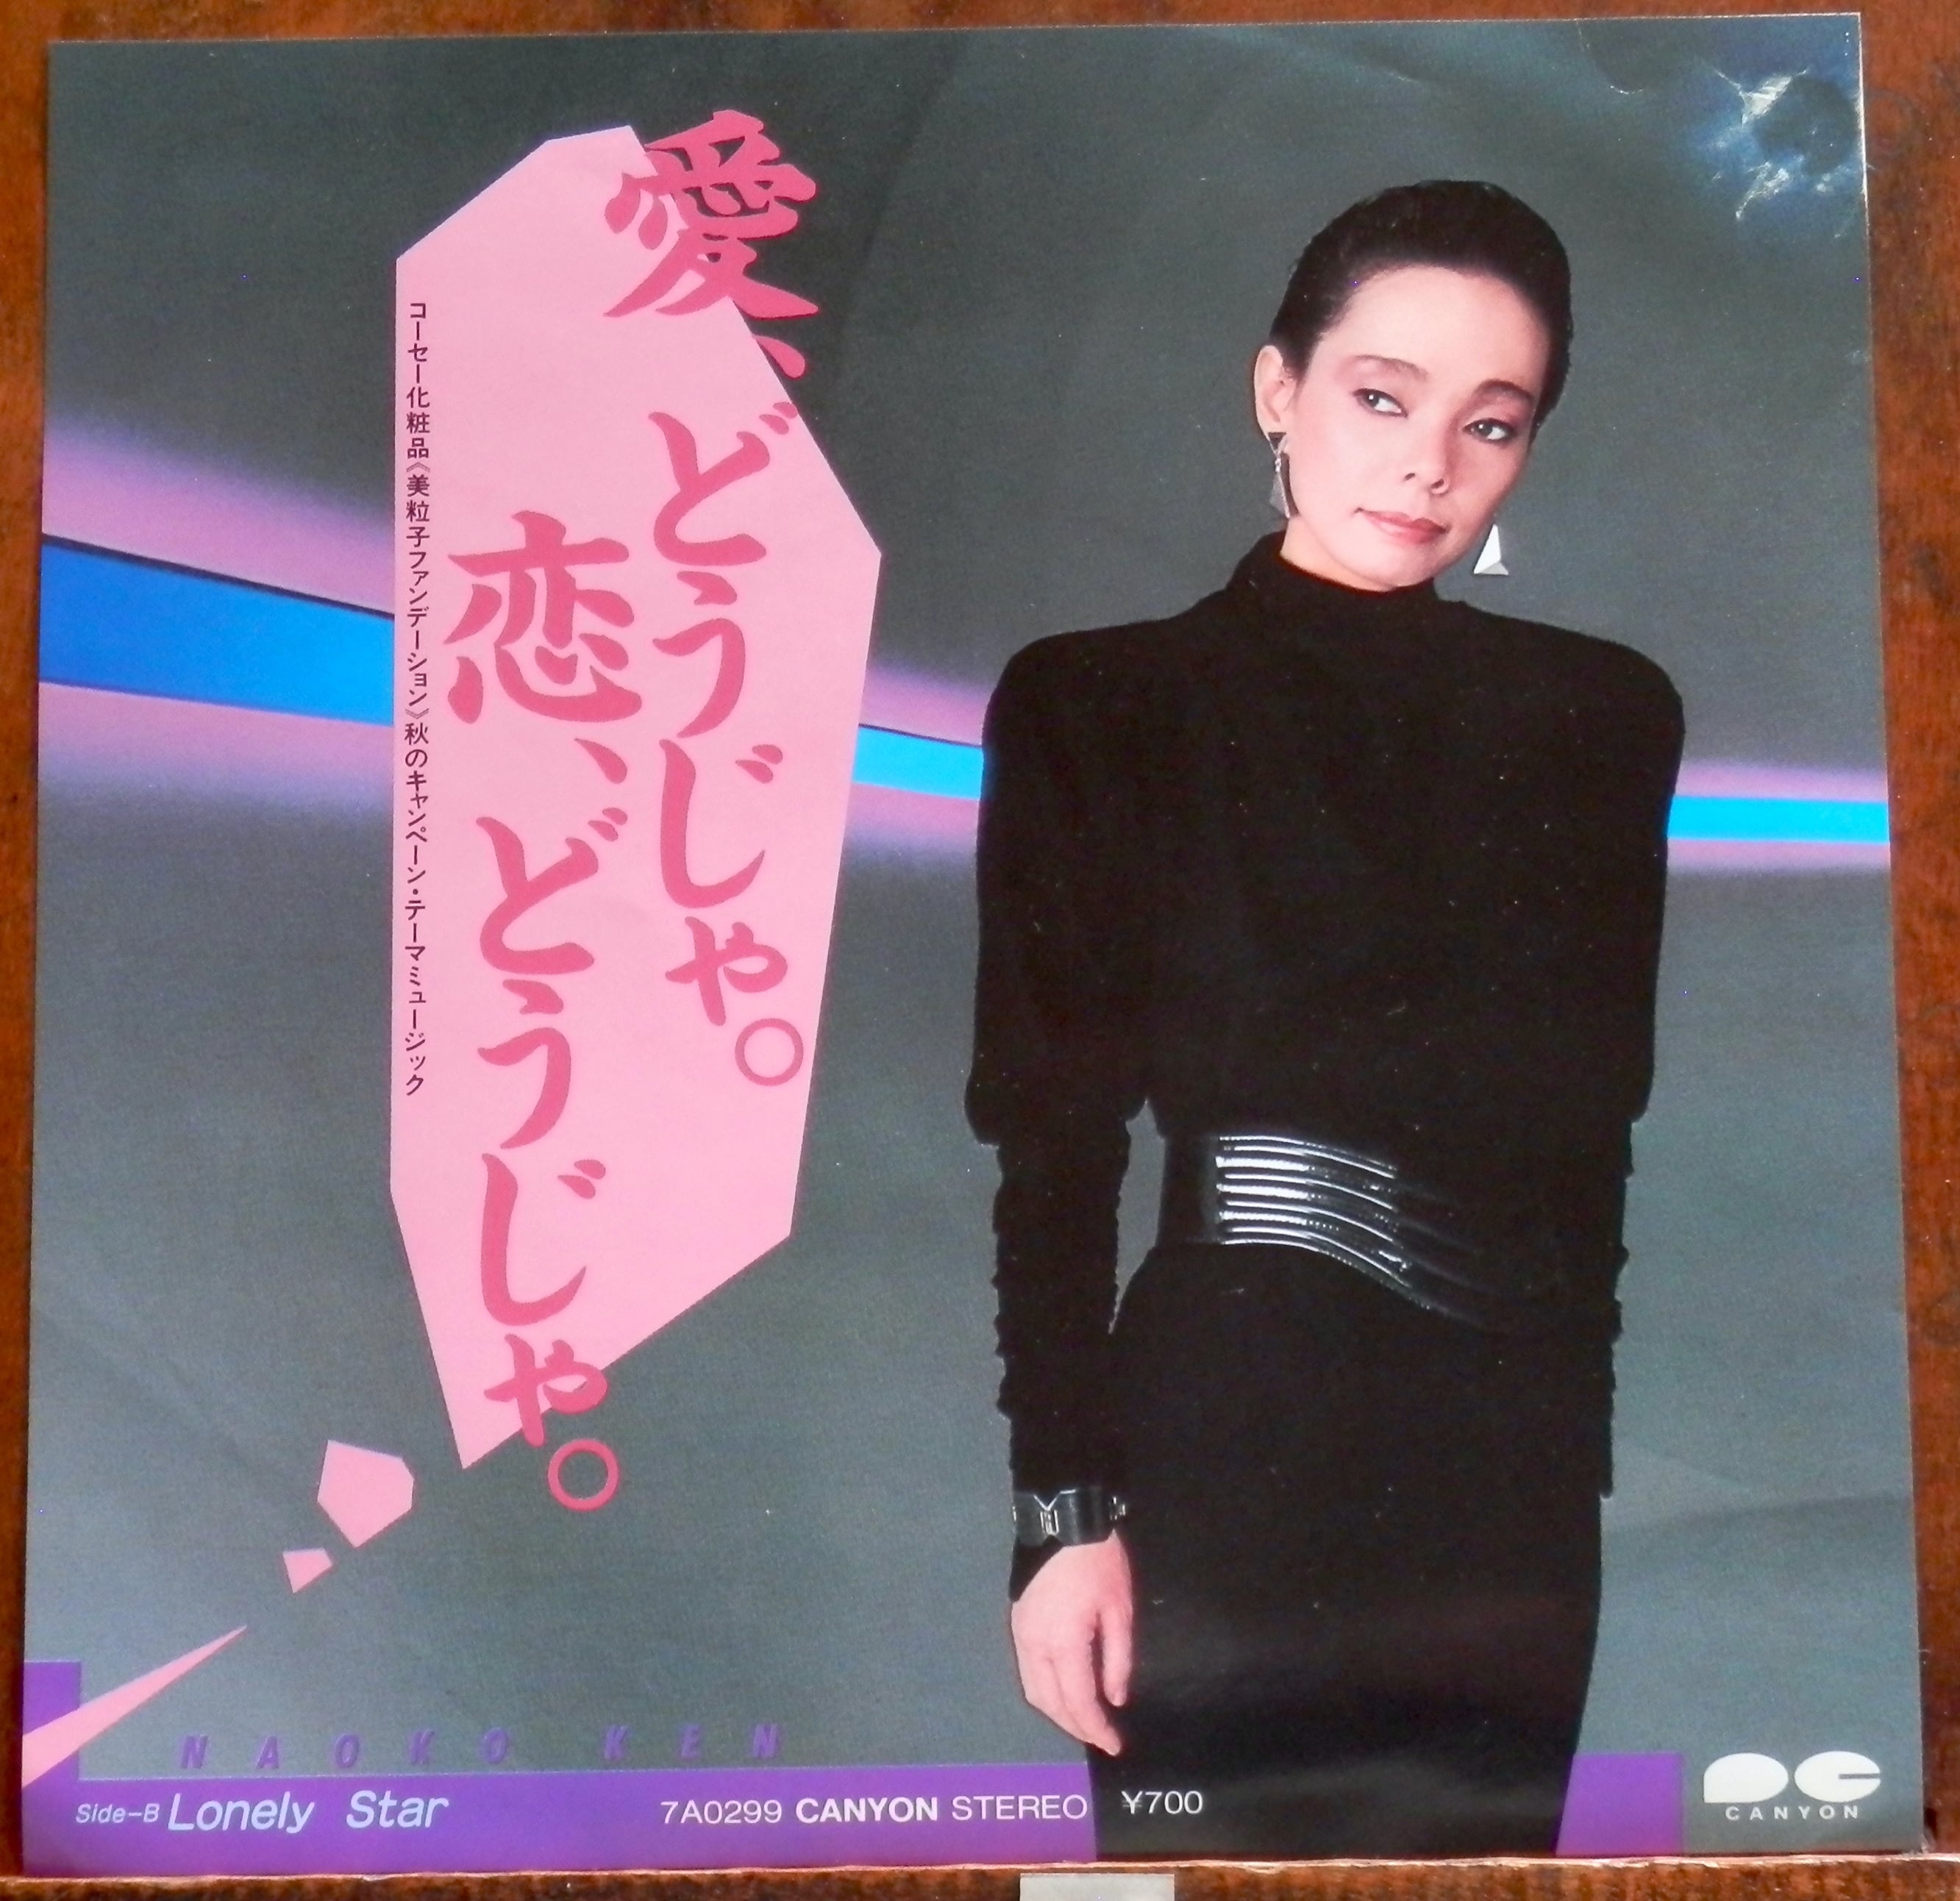 83【EP】研ナオコ 愛どうじゃ、恋どうじゃ。 音盤窟レコード